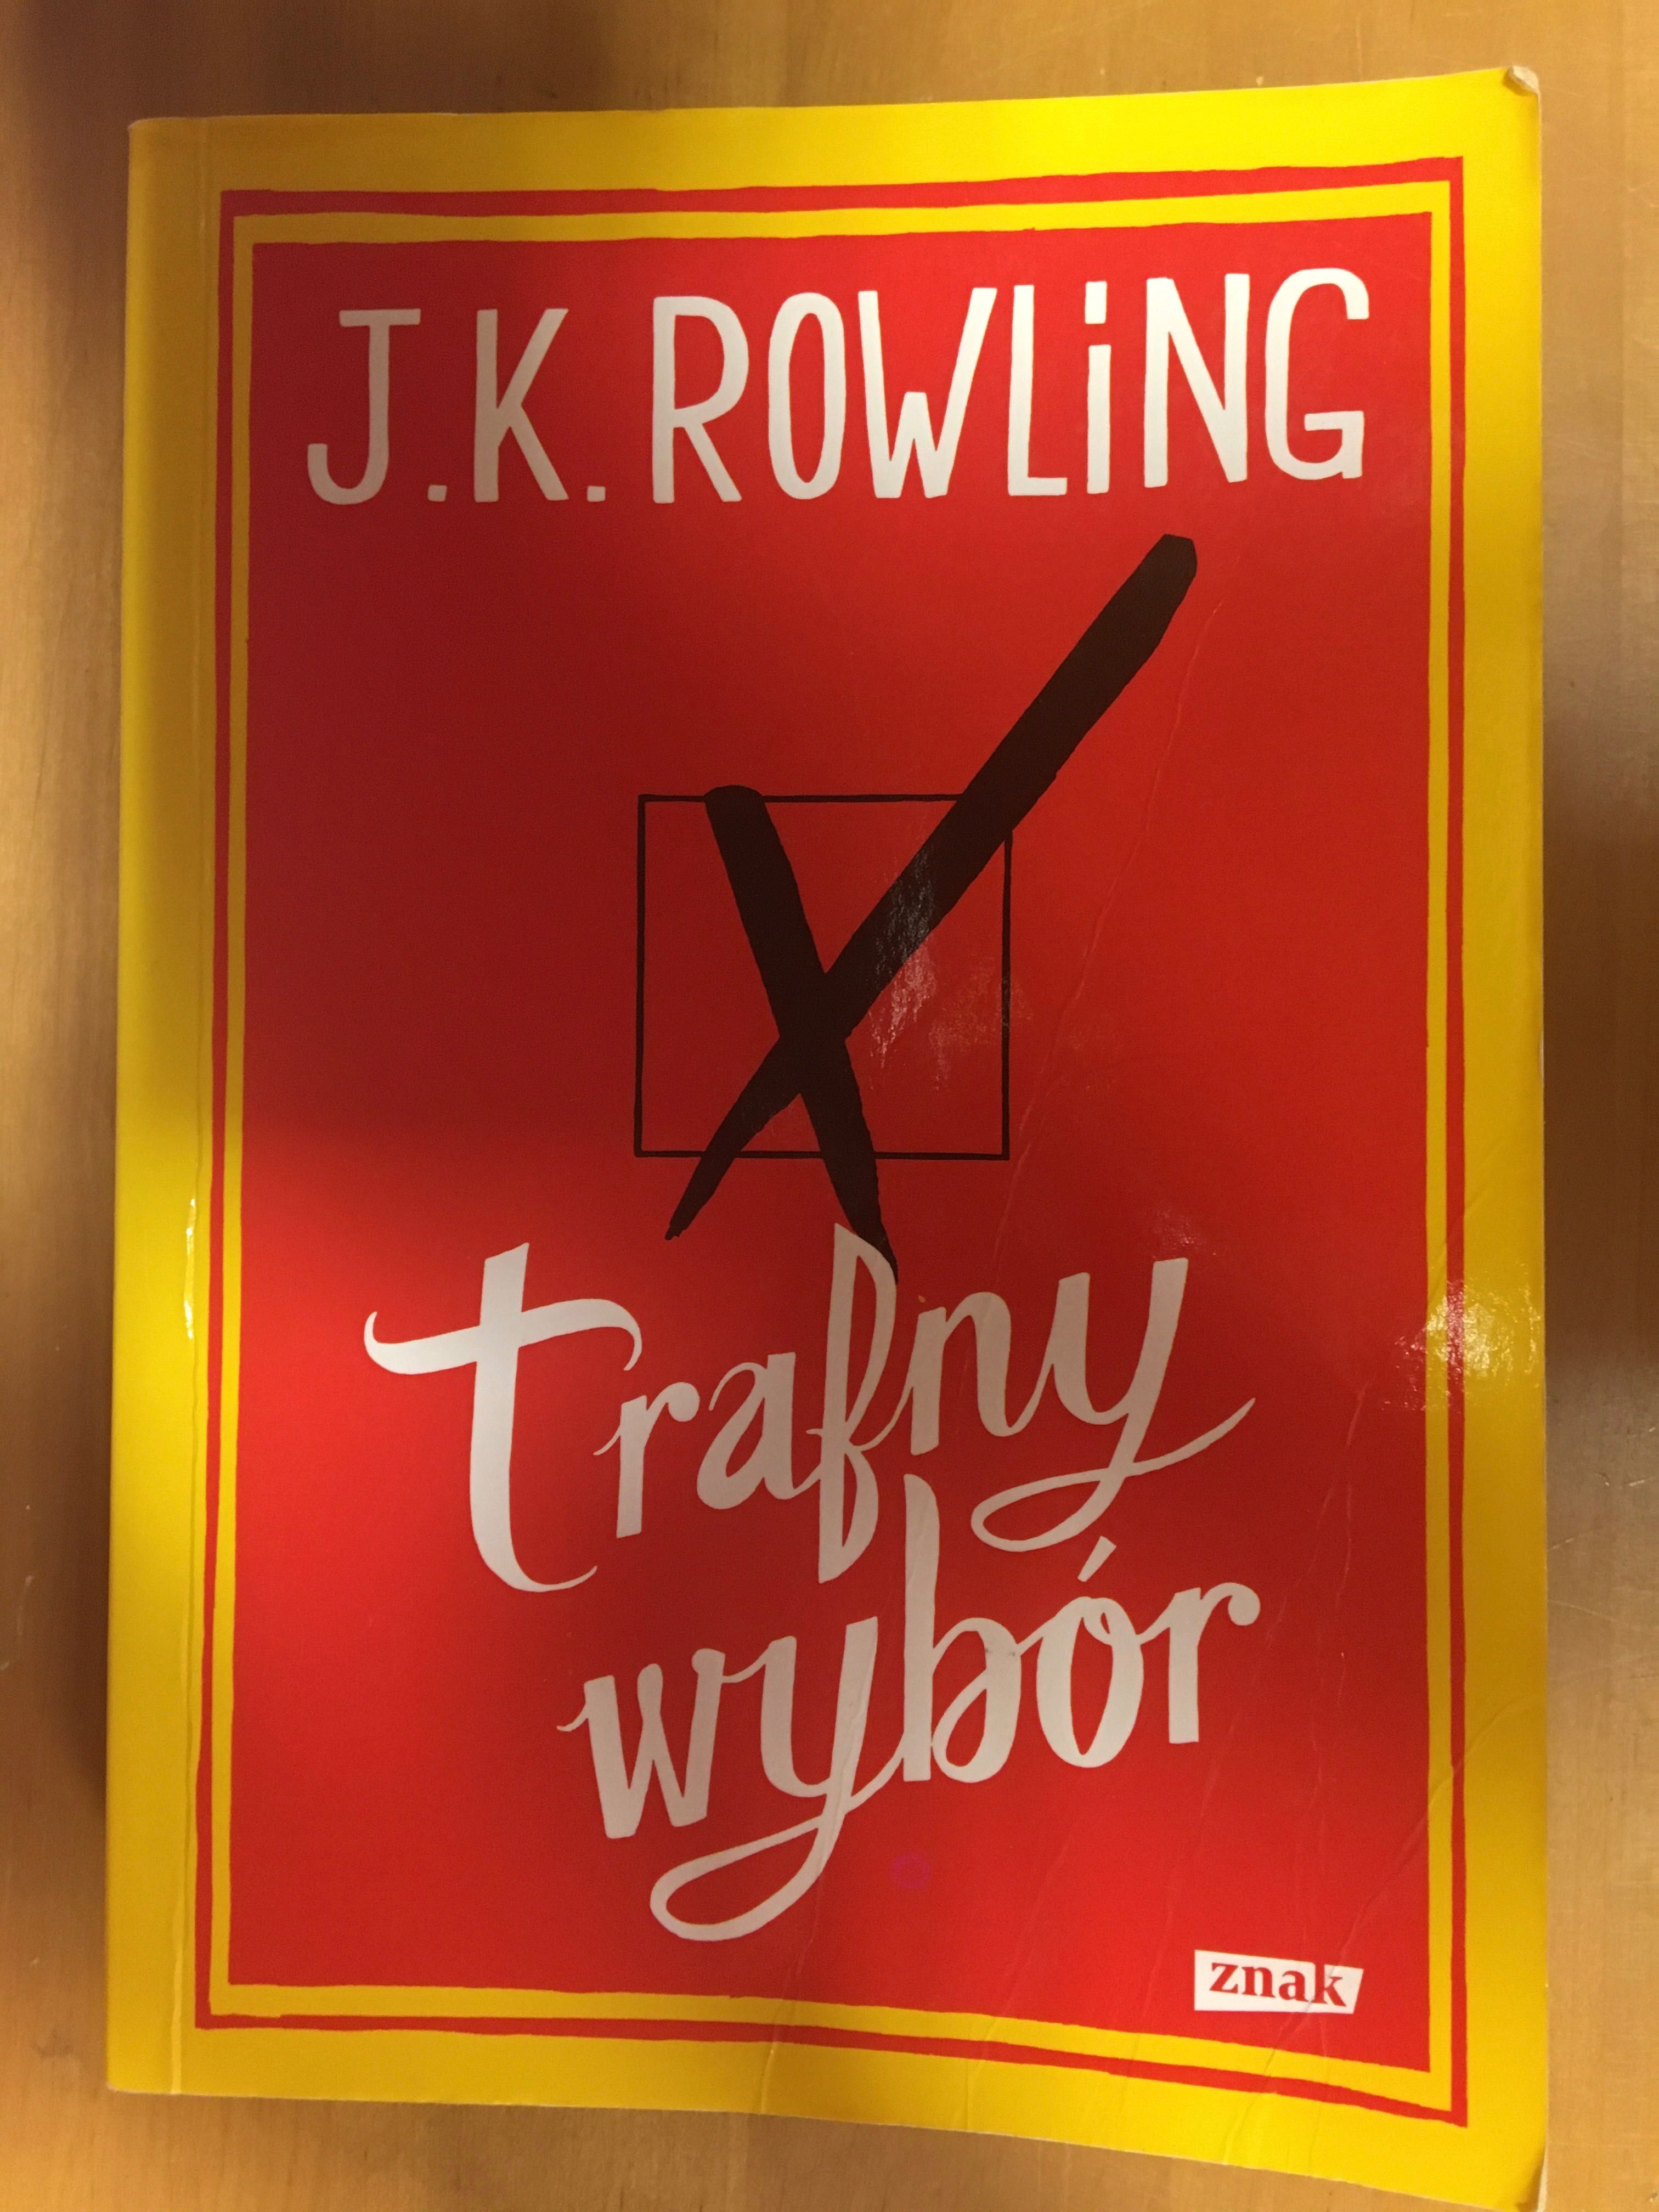 J.K.Rowling "Trafny wybór"